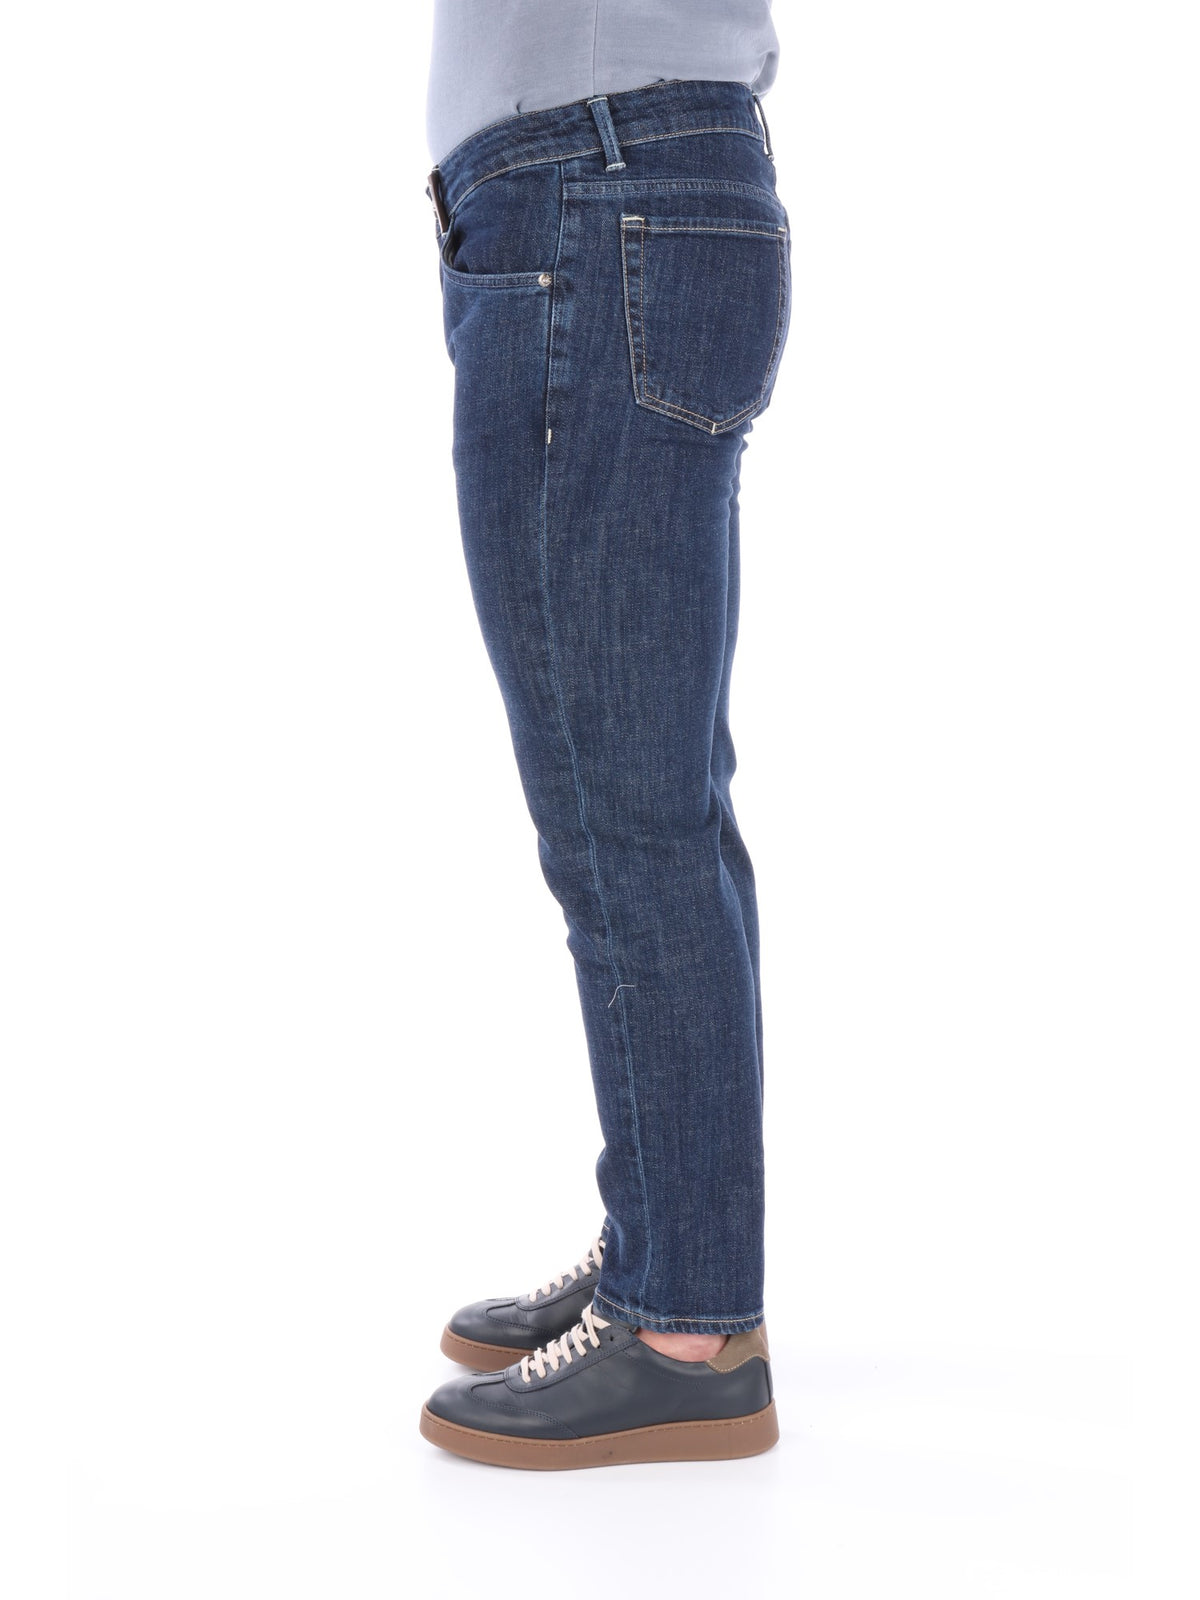 Mc Denimerie jeans slim fit da uomo